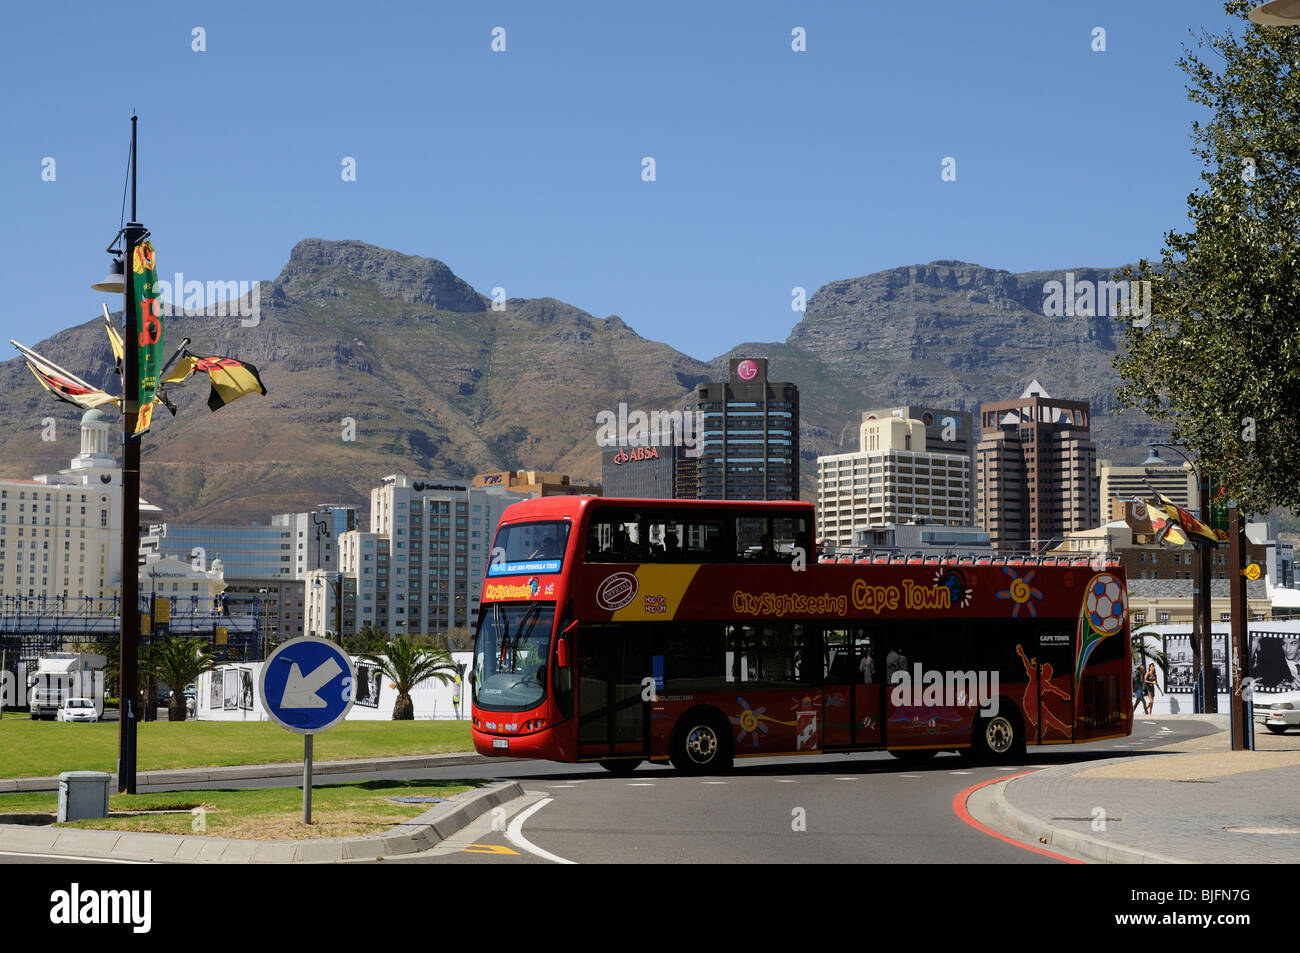 Rote Hop-on Hop-off Sightseeing Touristenbus im Stadtzentrum von Kapstadt Südafrika Stockfoto